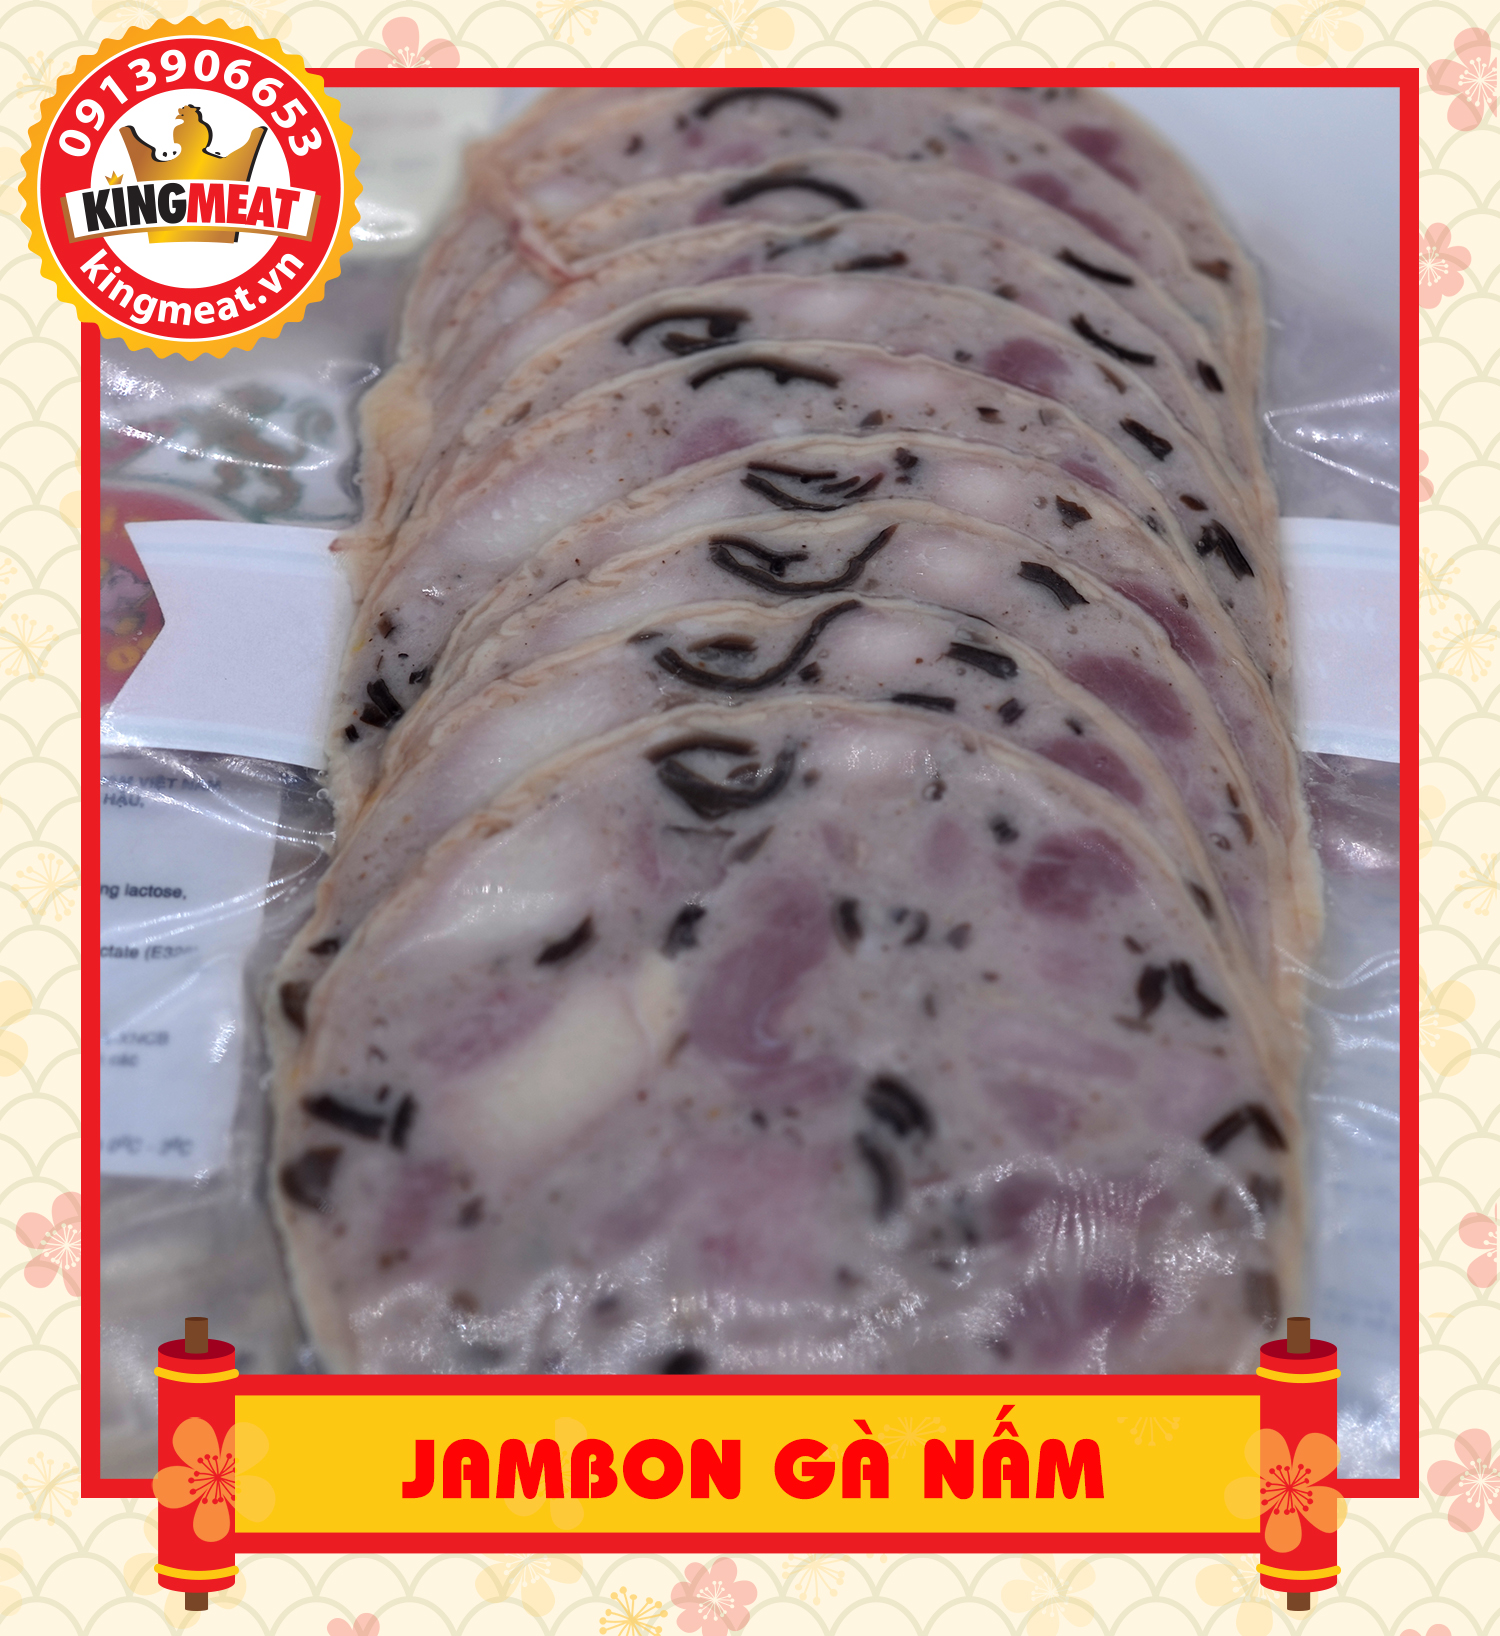 Jambon-ga-nam-05